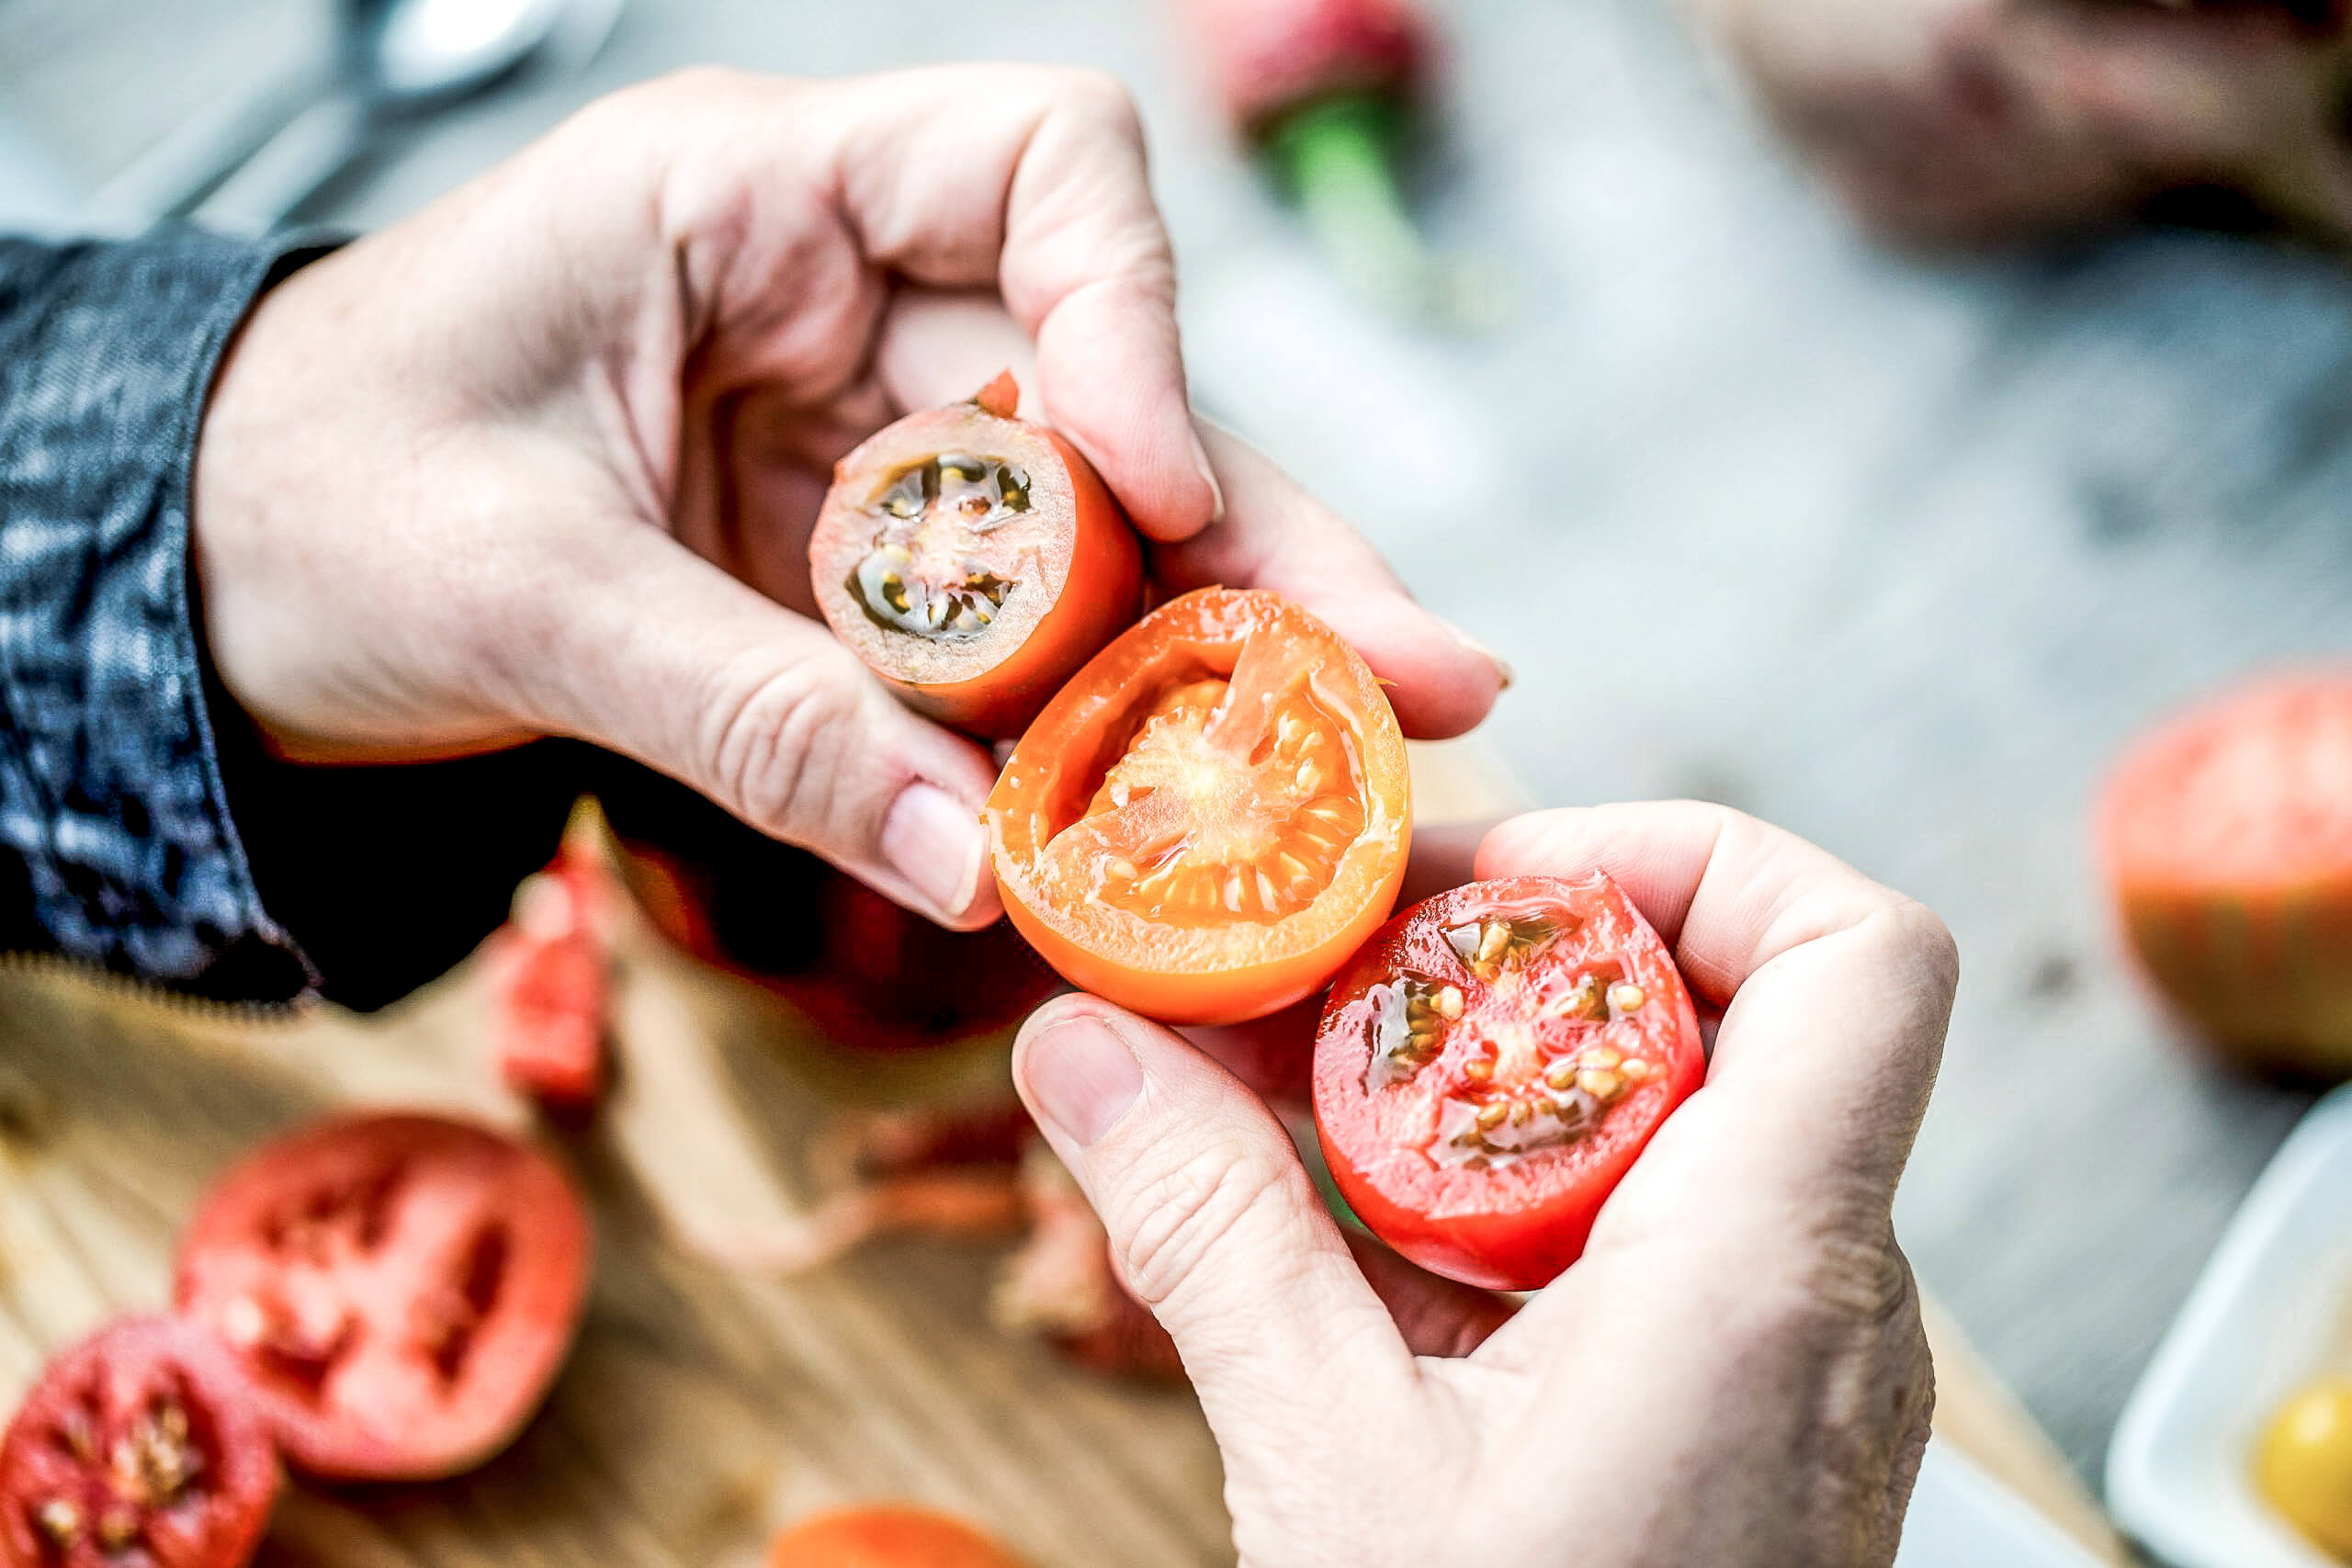 Tomates recién cortados para creaciones / fusiones alimentarias creativas